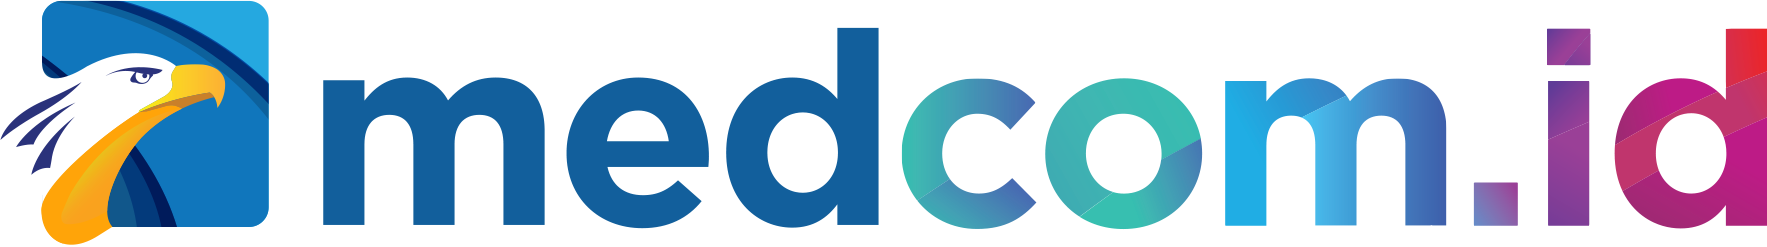 Media Logo 21 MedcomId.png